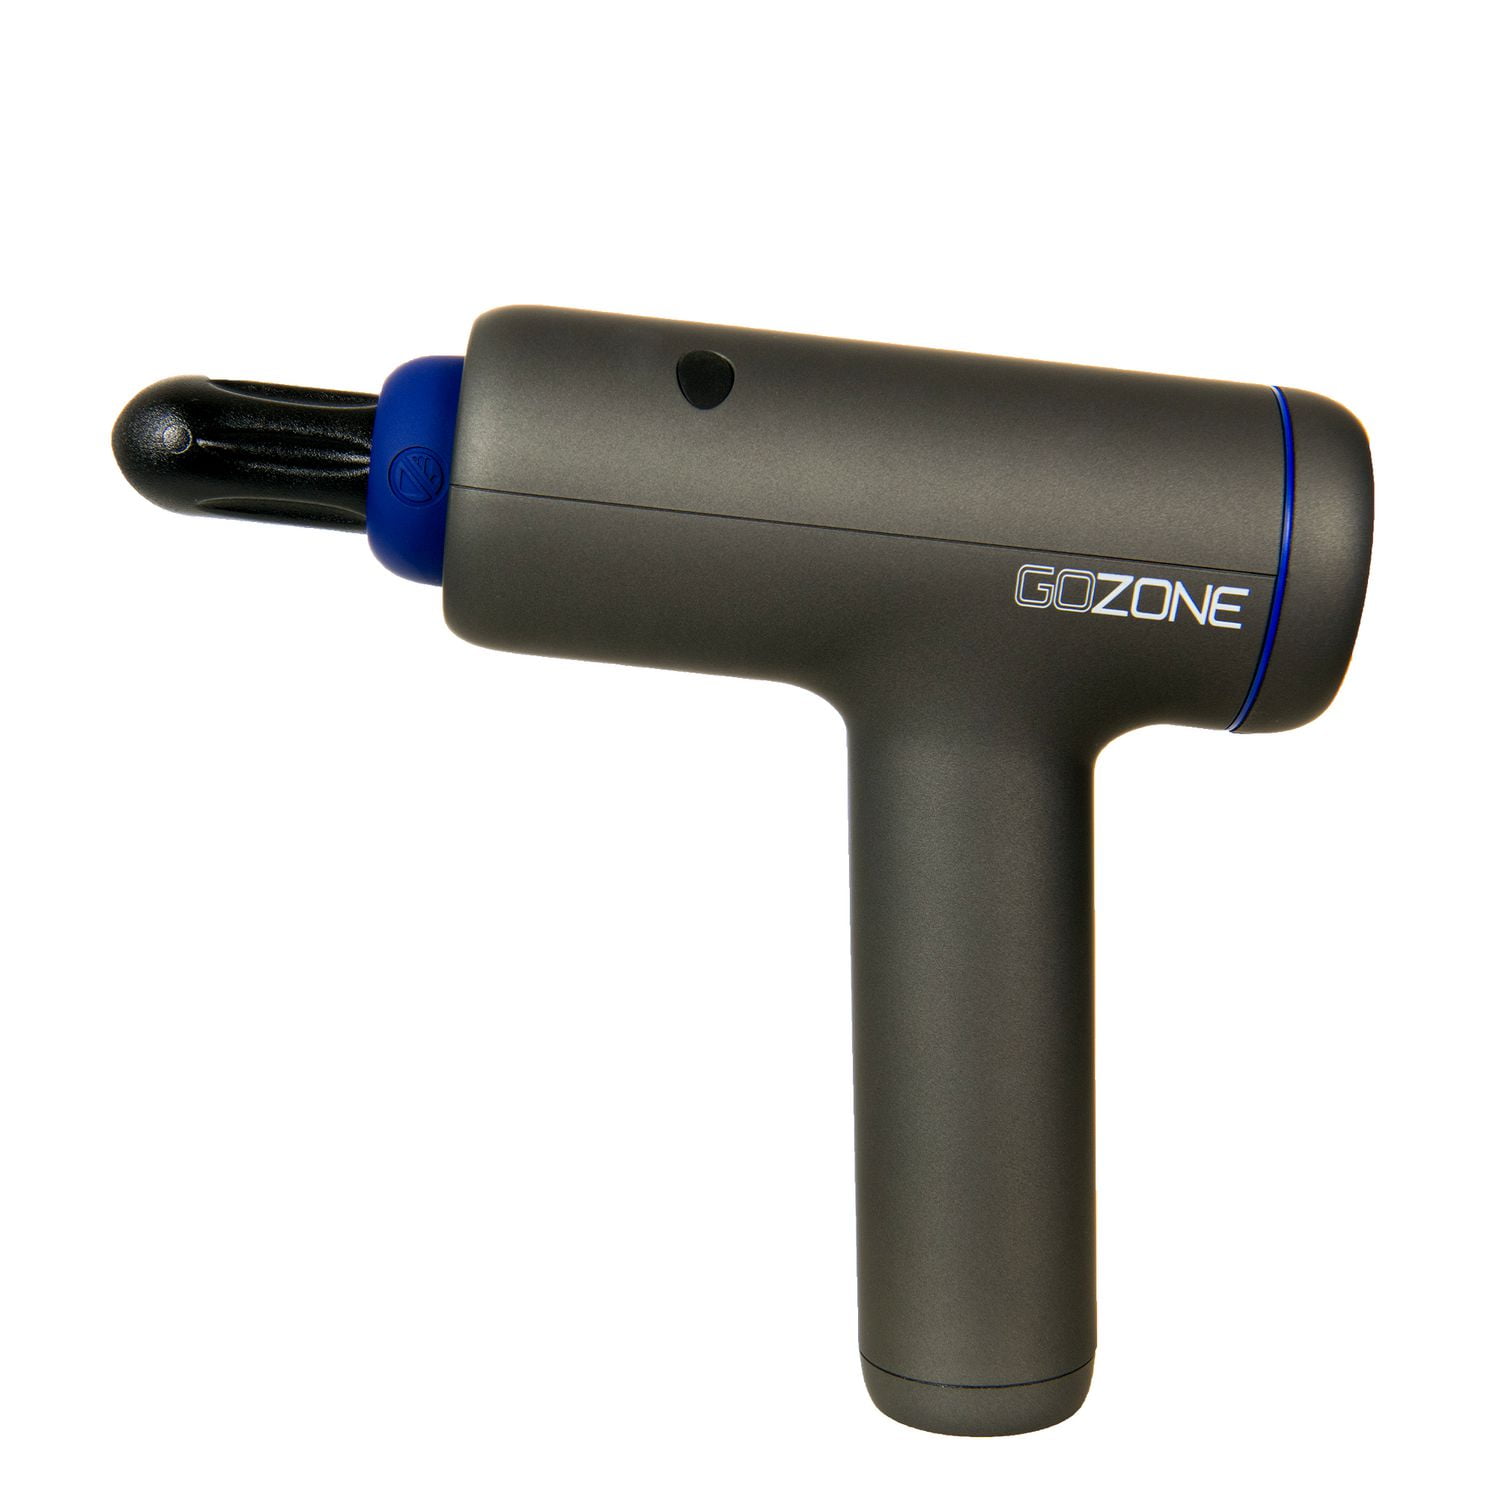 GoZone Massage Gun with Storage Case – Black/Blue, Includes 4